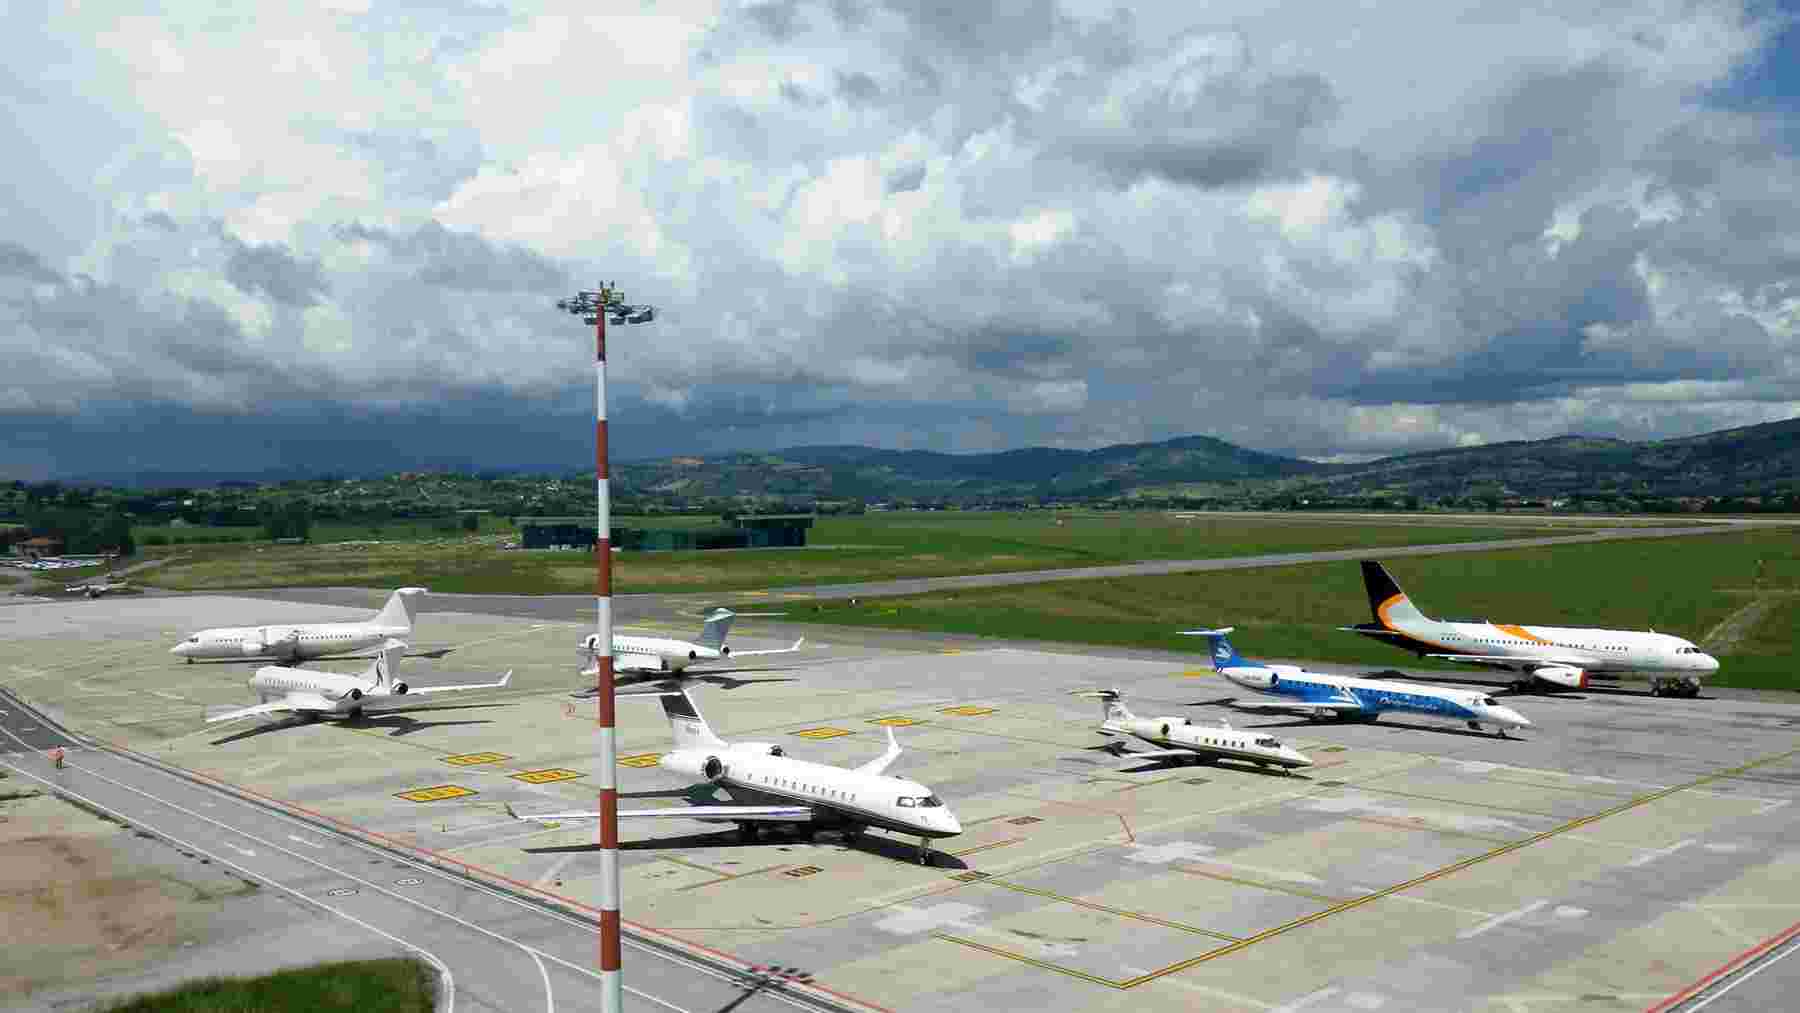 Aeroporto di Perugia boom di arrivi in Umbria. A maggio ancora dati in crescita: +10%